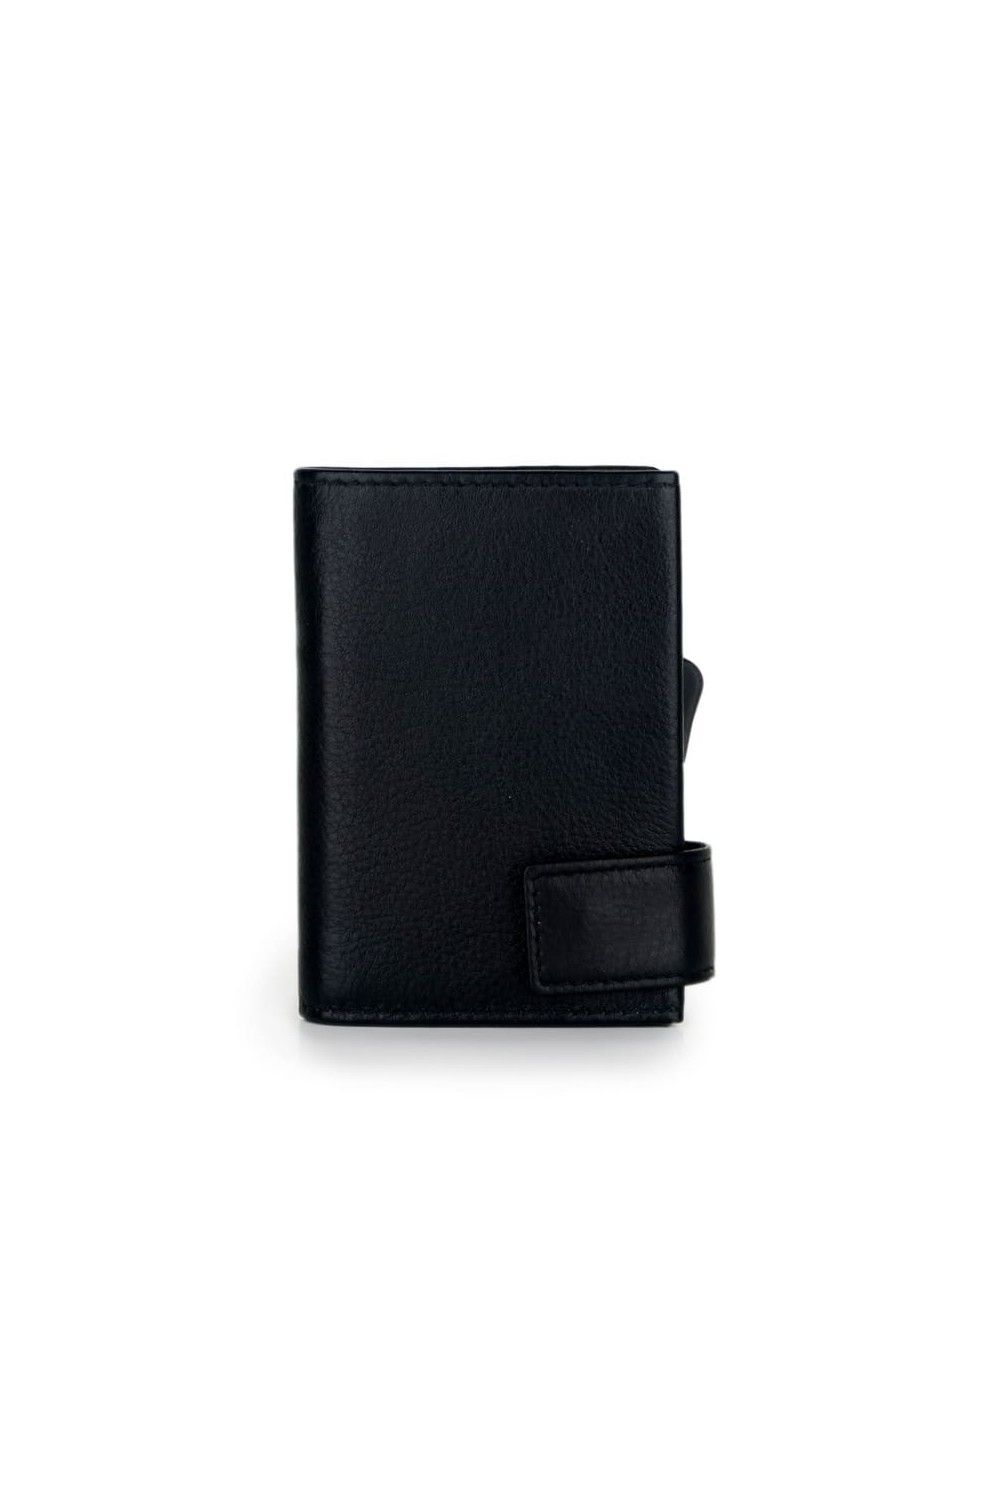 SecWal Card Case XL RV Leather Black